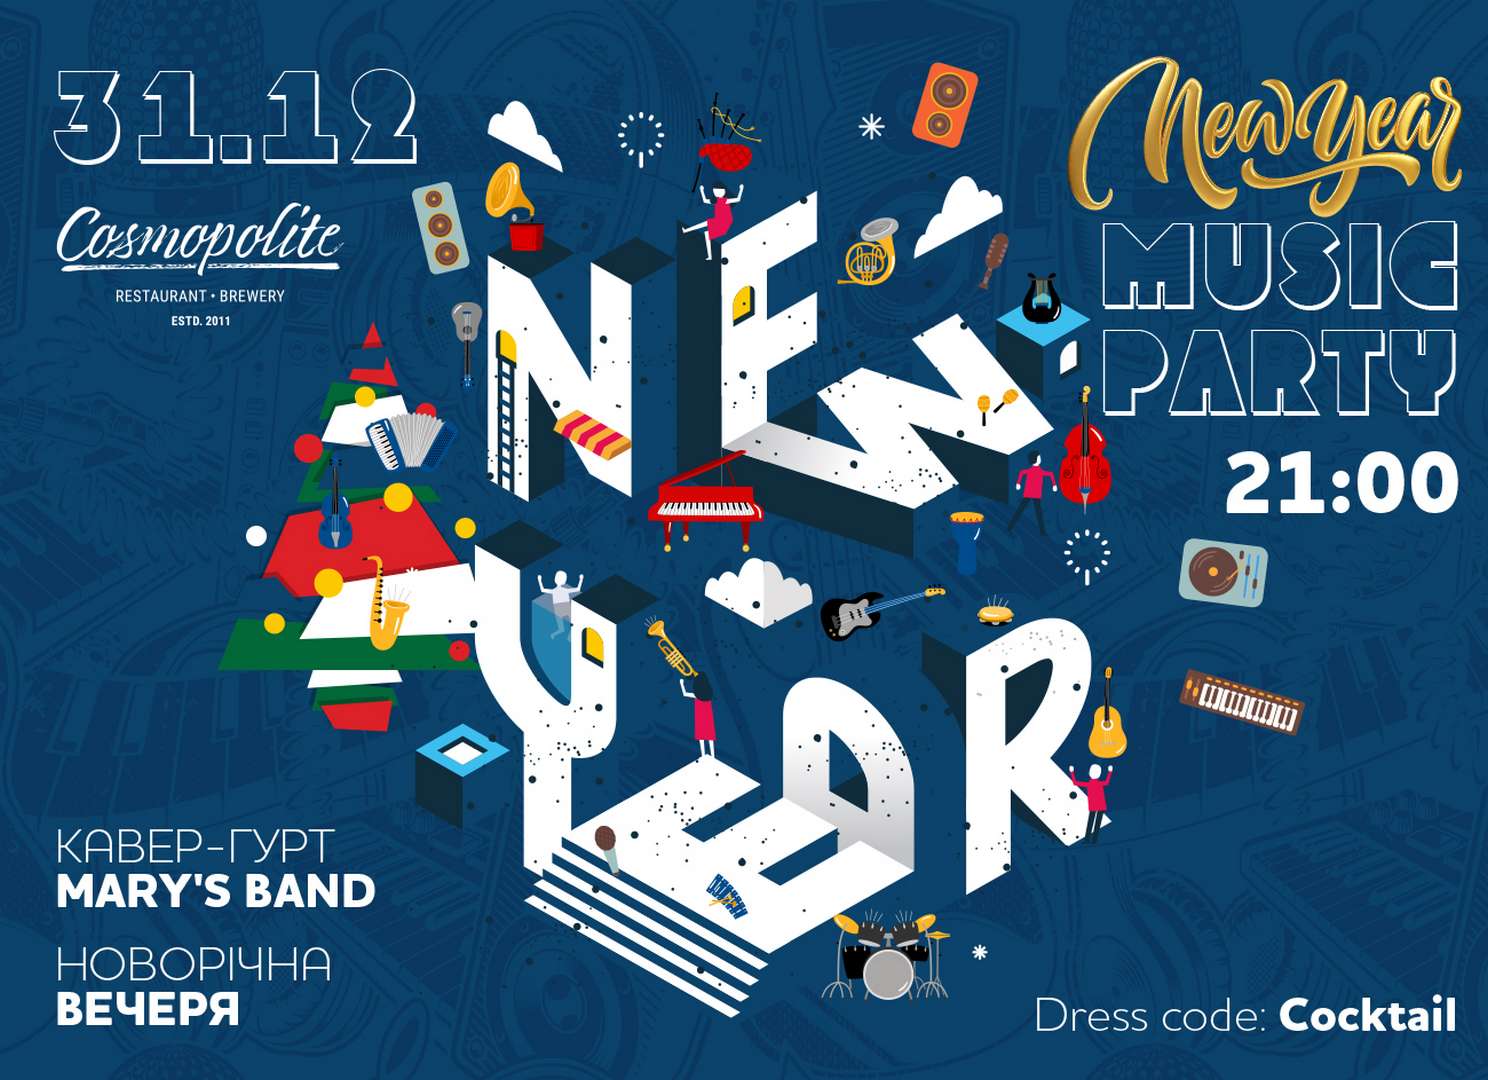 New Year Music Party 2021: Специальное предложение для гостей отеля Mercure